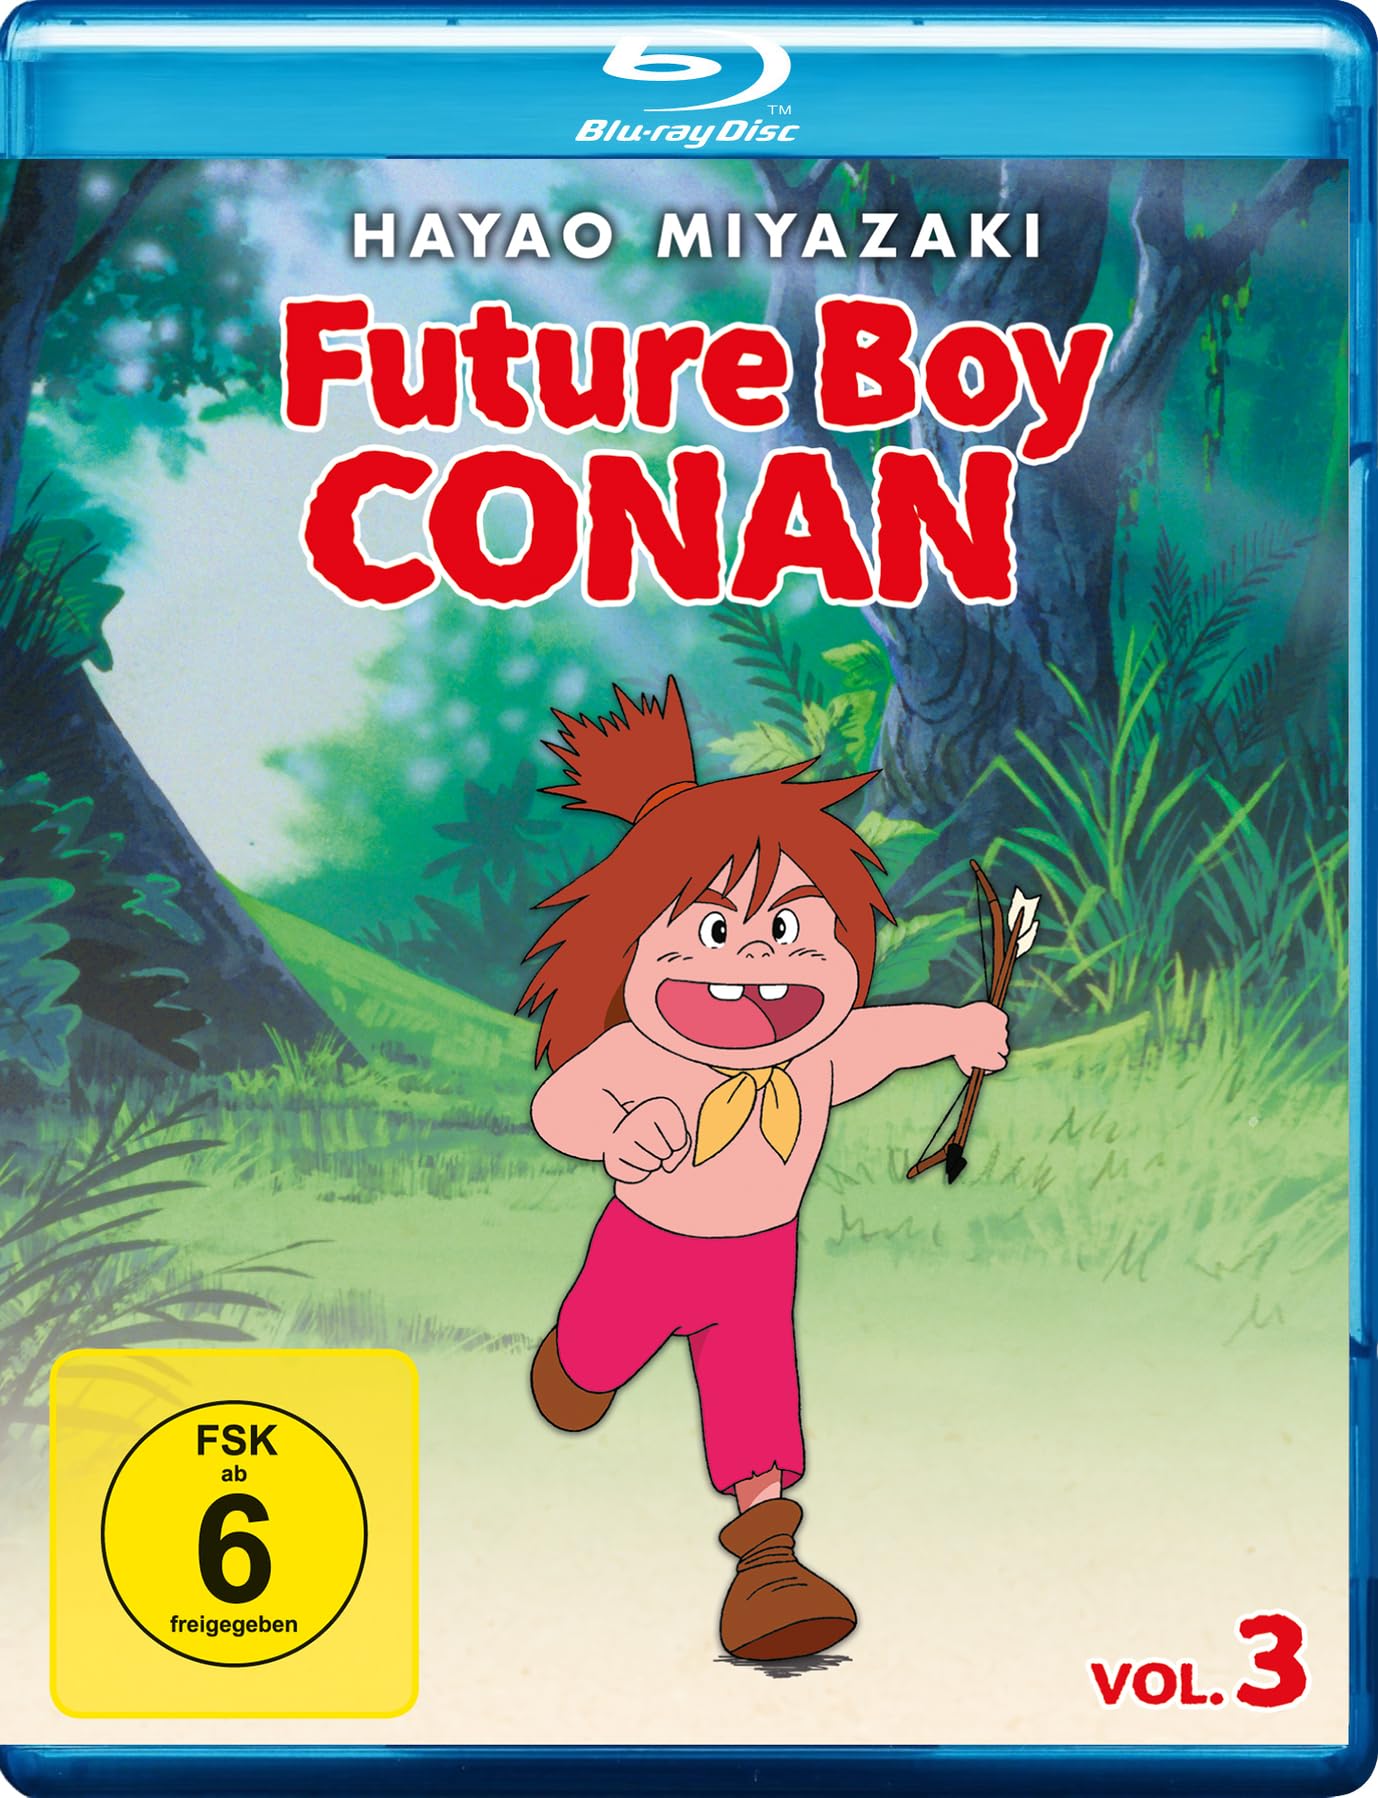 FUTURE BOY CONAN - Vol. 3 LTD. - Limited Edition mit Text Book [Blu-ray]